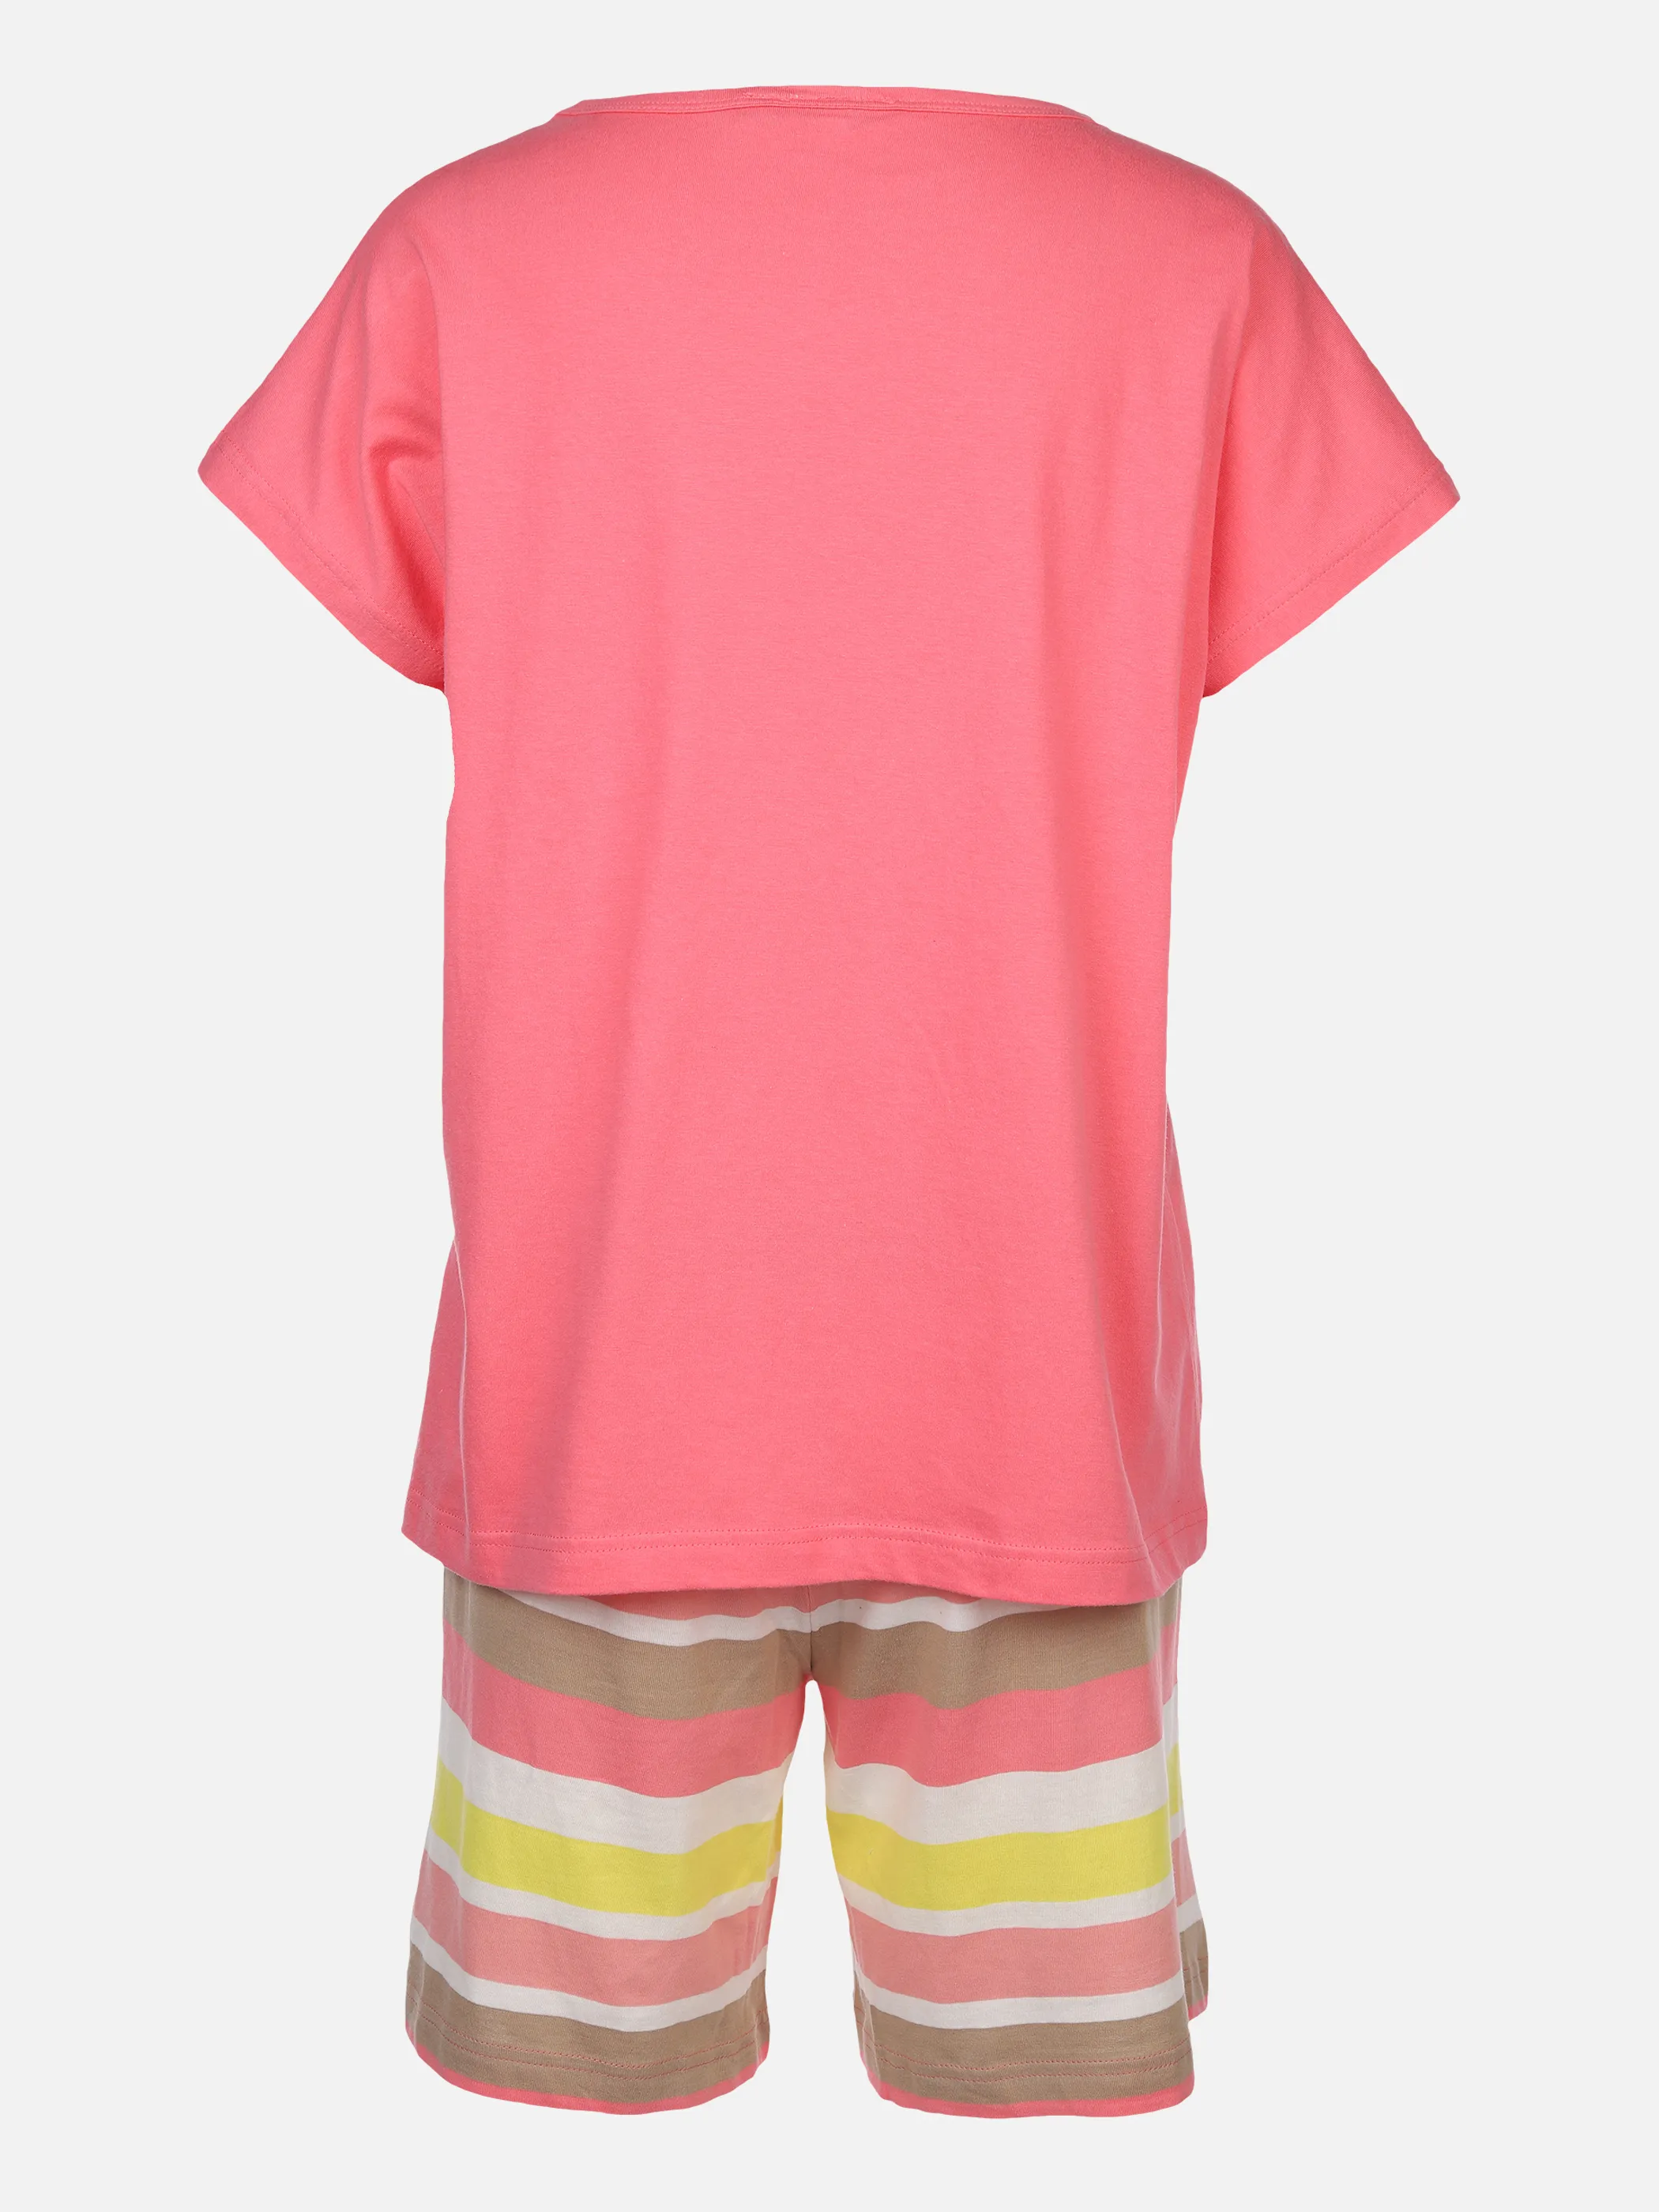 Sure Da Pyjama kurz Shirt 1/2 + Ber Orange 874050 PEACH 2